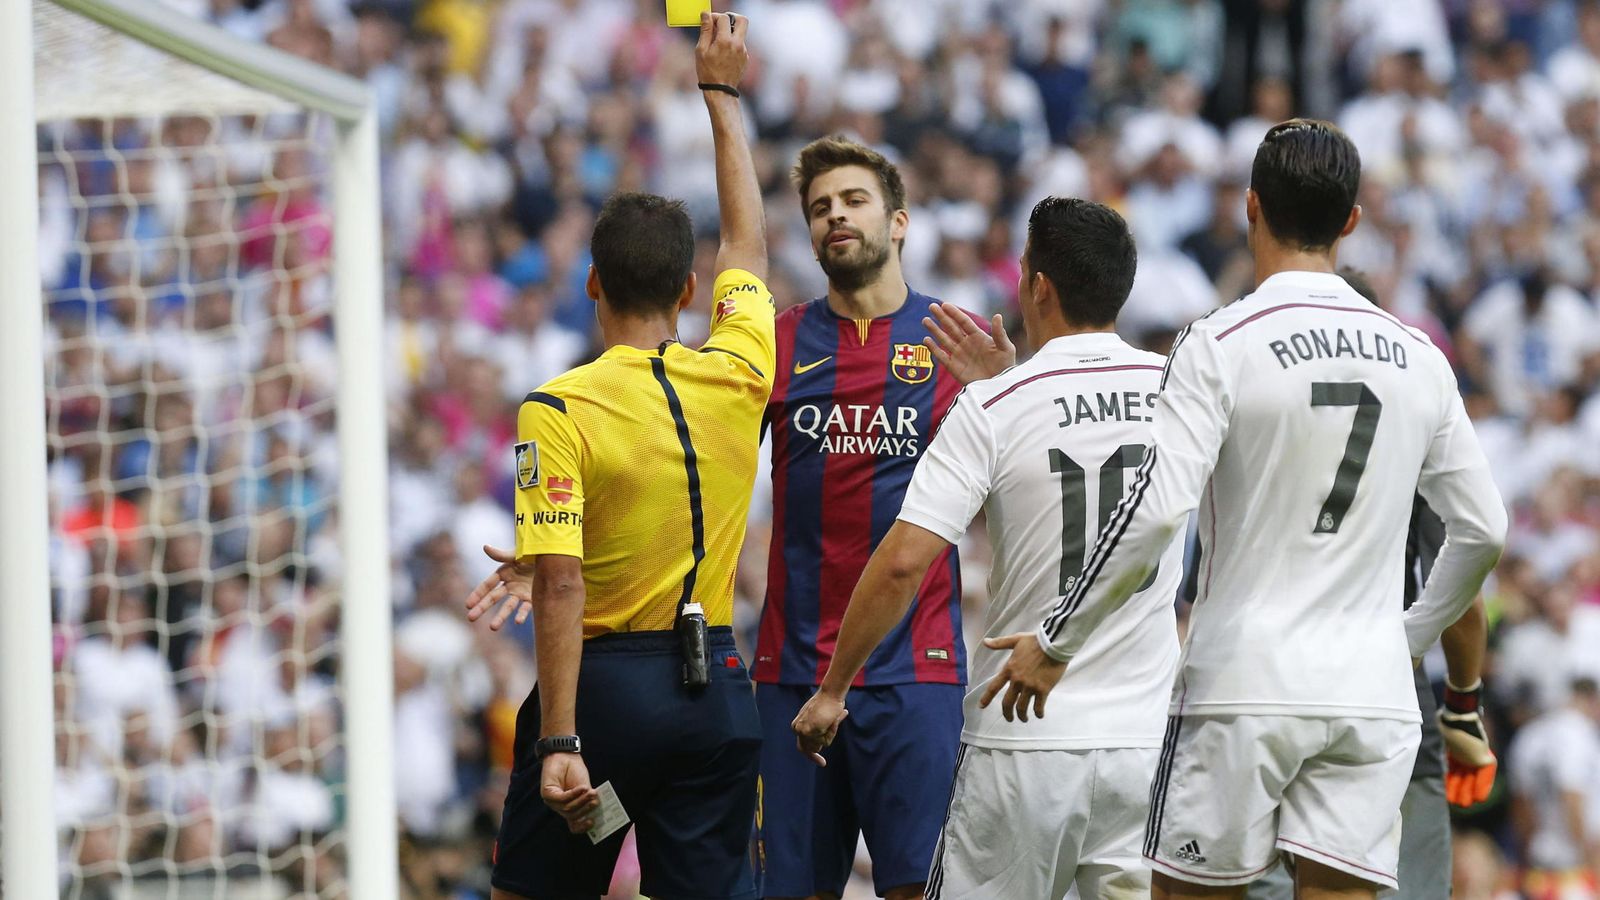 Foto: El árbitro saca tarjeta amarilla a Gerard Piqué (c) ante James Rodríguez (2d) y Cristiano Ronaldo en un partido de Liga. (EFE)